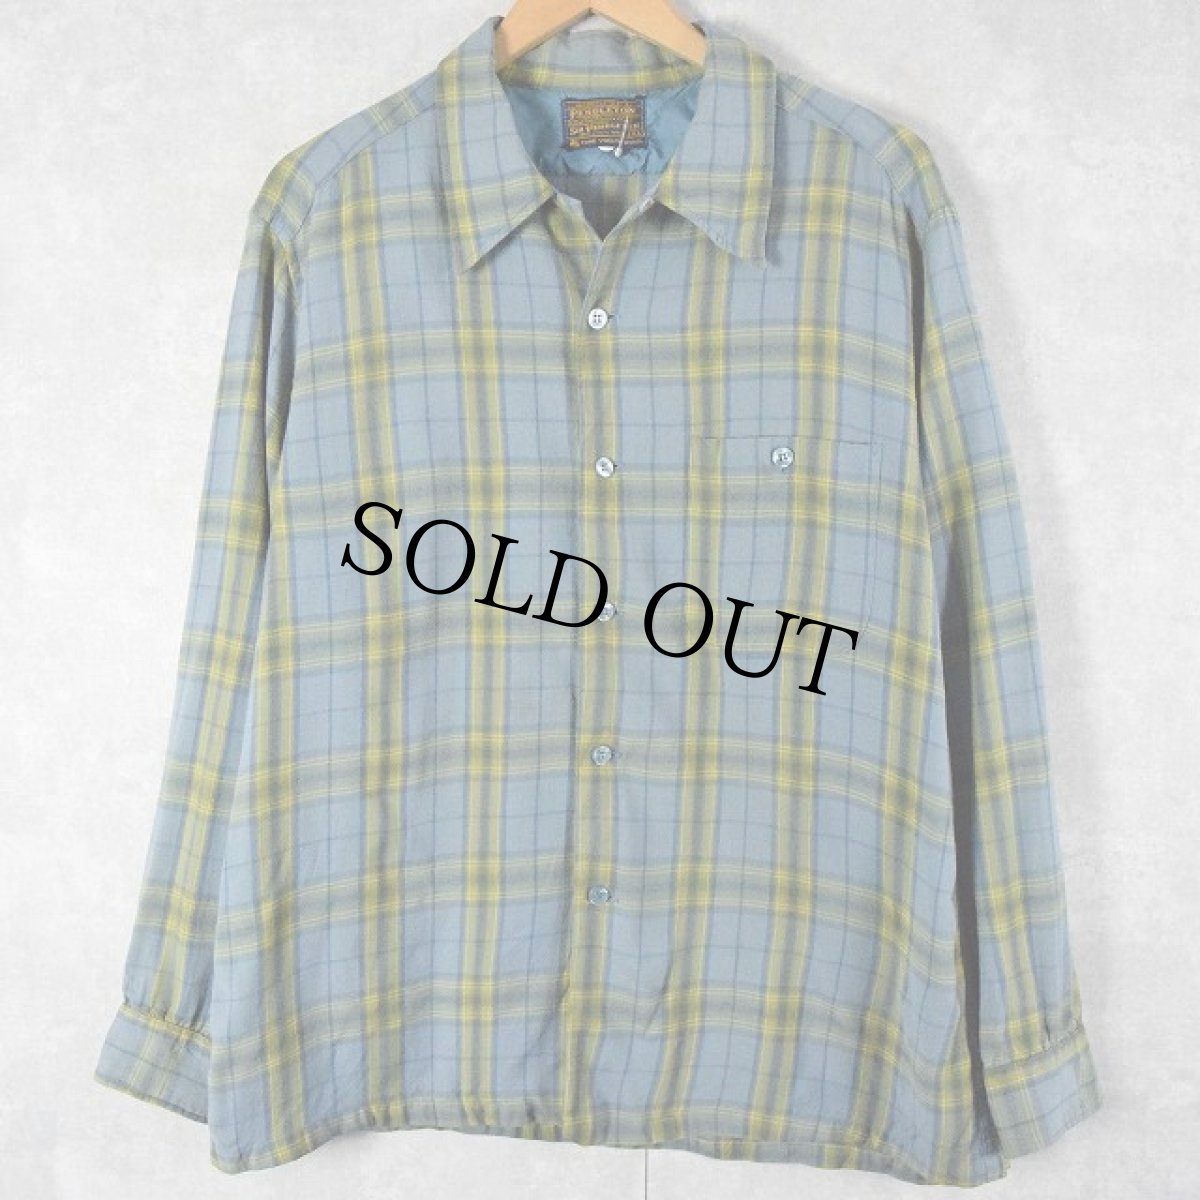 画像1: 60's Sir Pendleton チェック柄 オープンカラーウールシャツ XL (1)